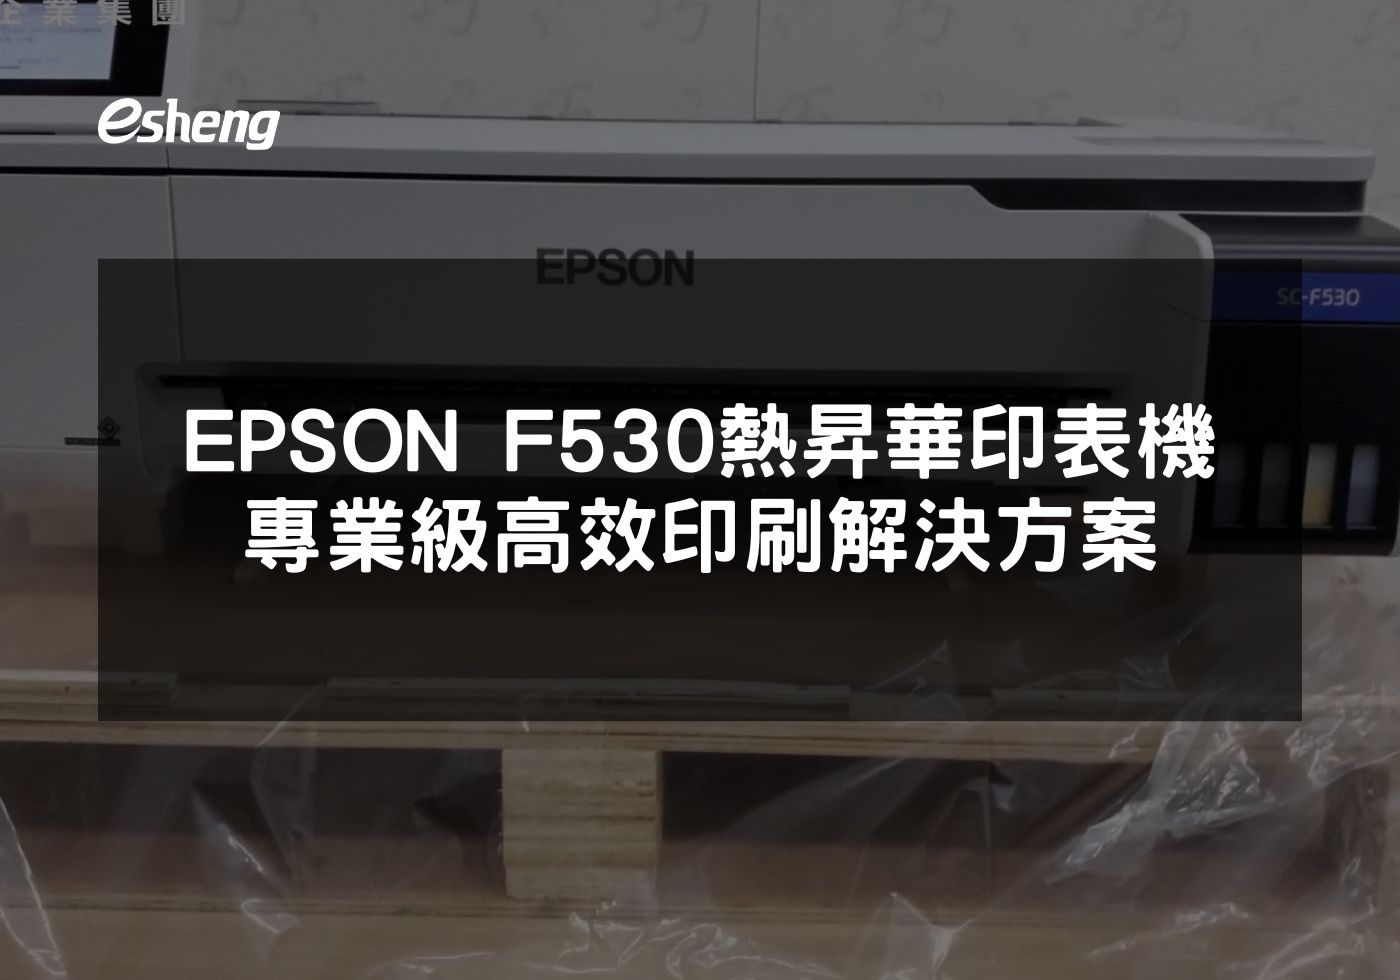 EPSON F530熱昇華印表機 專業級高效印刷解決方案